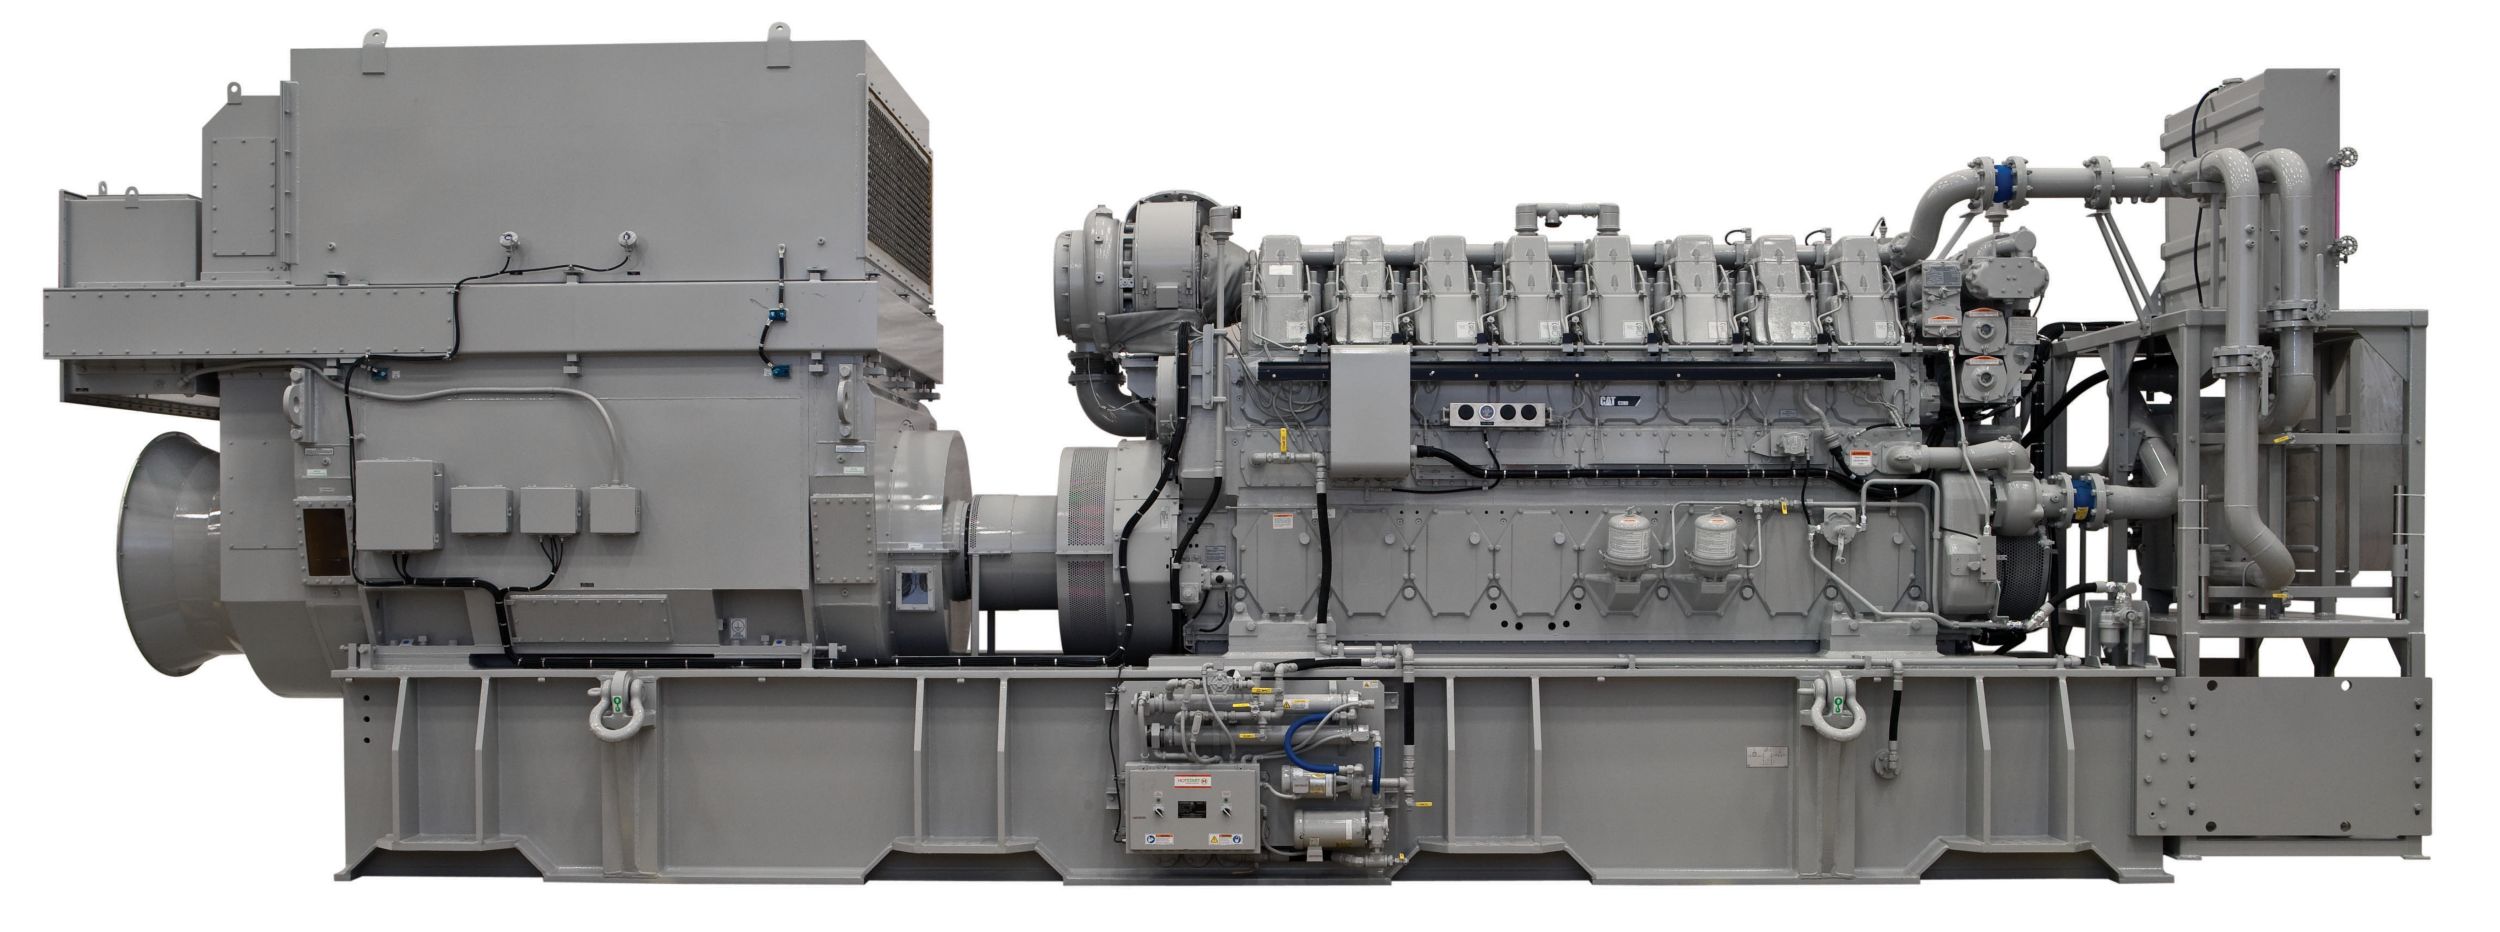 C280-8 Offshore Generator Set>